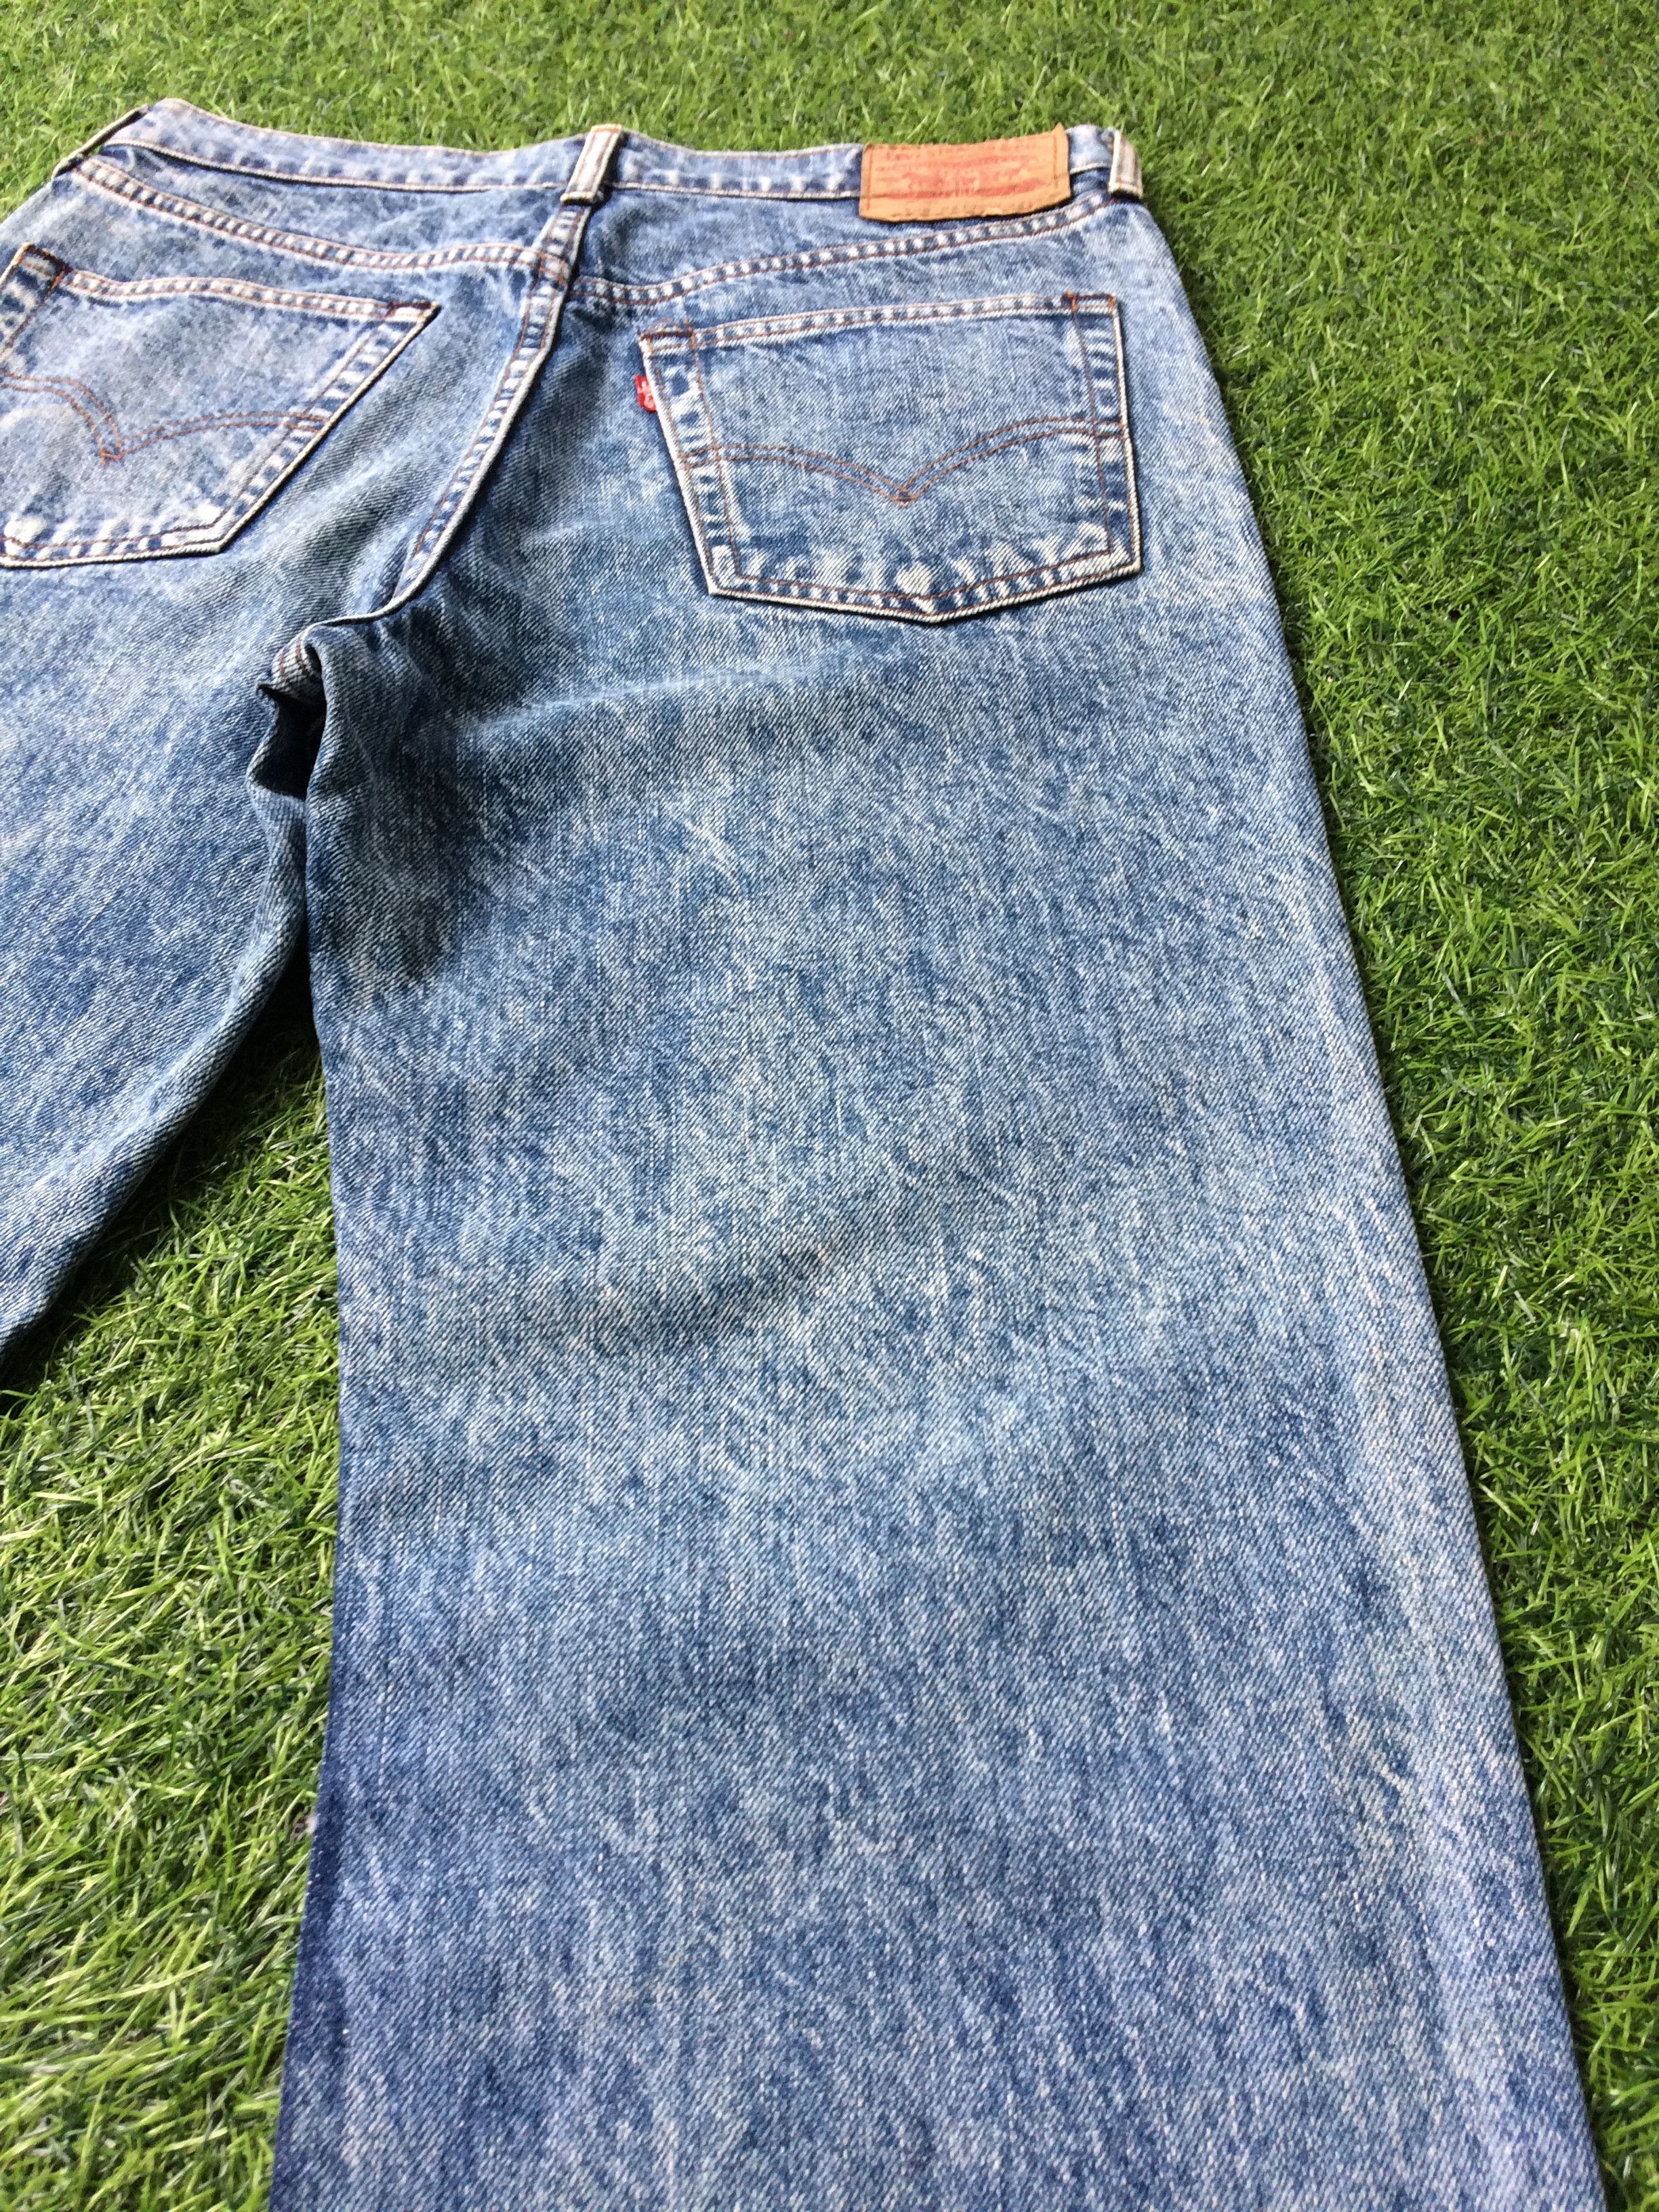 Vintage Distressed Levis 508 Acid Wash Jeans #B-495 Size US 30 / EU 46 - 5 Thumbnail